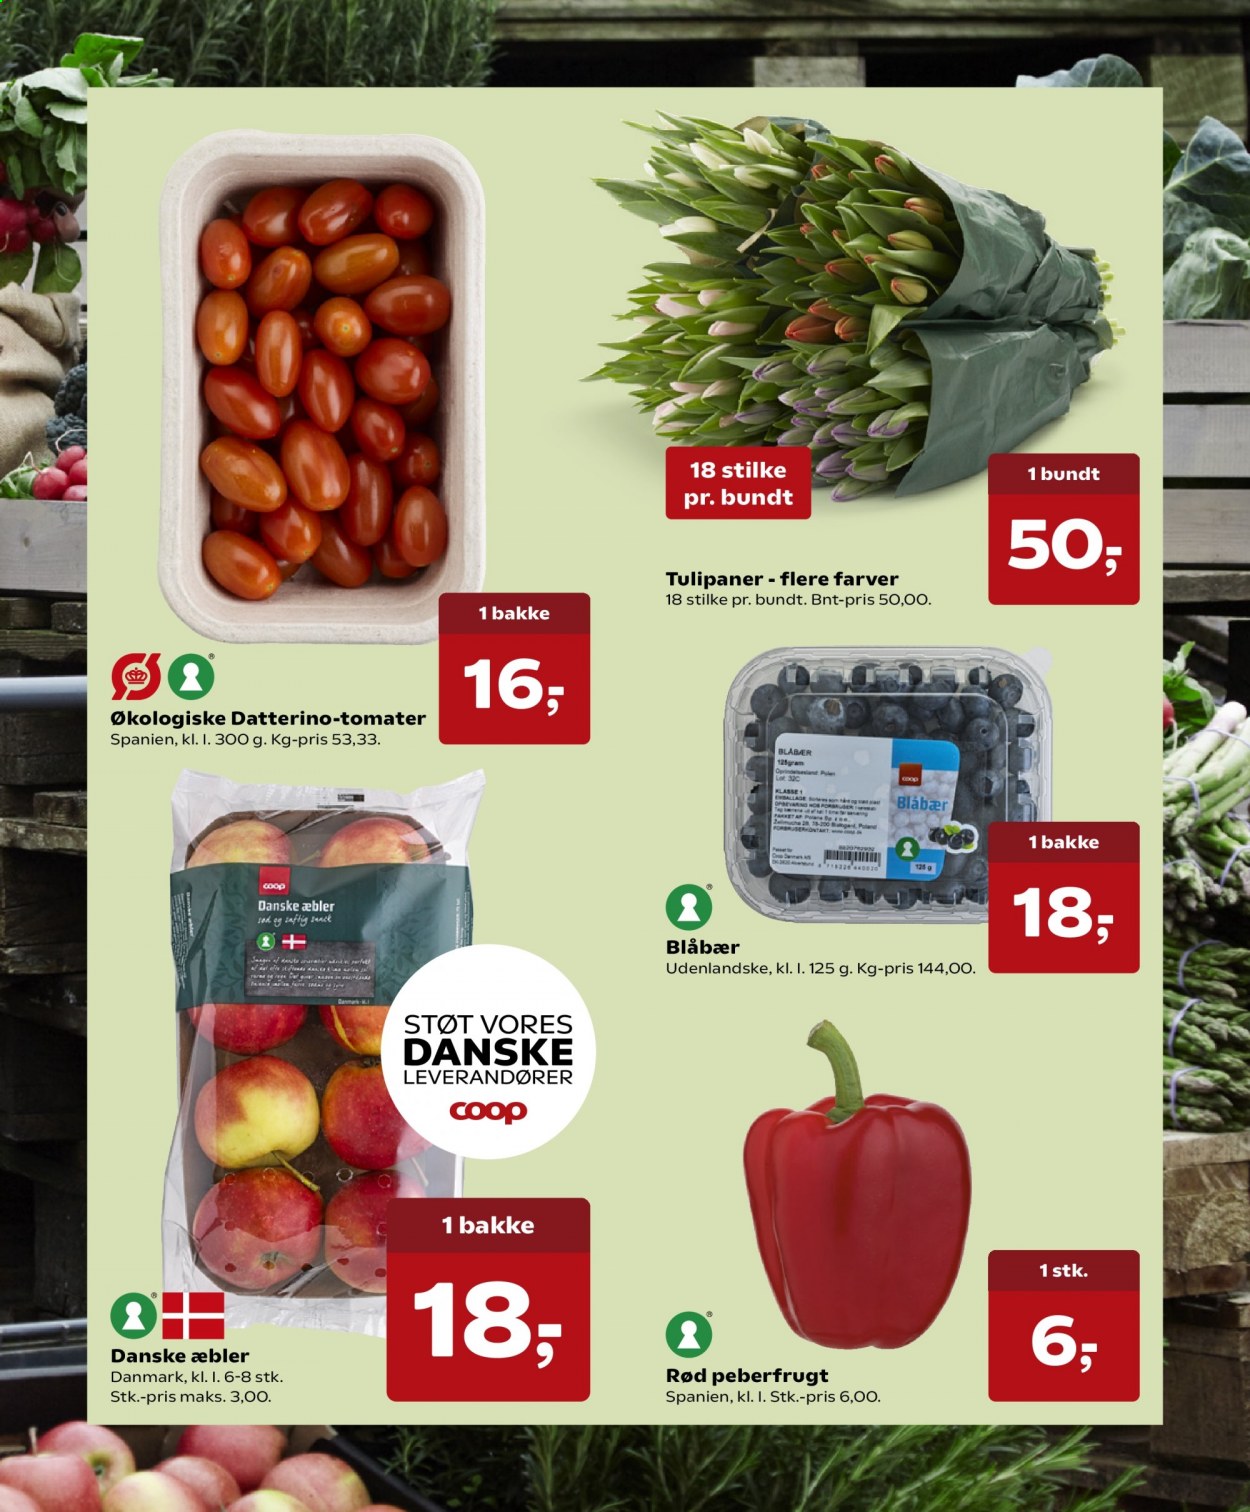 thumbnail - Dagli'Brugsen tilbud  - 19.2.2021 - 4.3.2021 - tilbudsprodukter - æbler, blåbær, peberfrugt, tomat. Side 6.